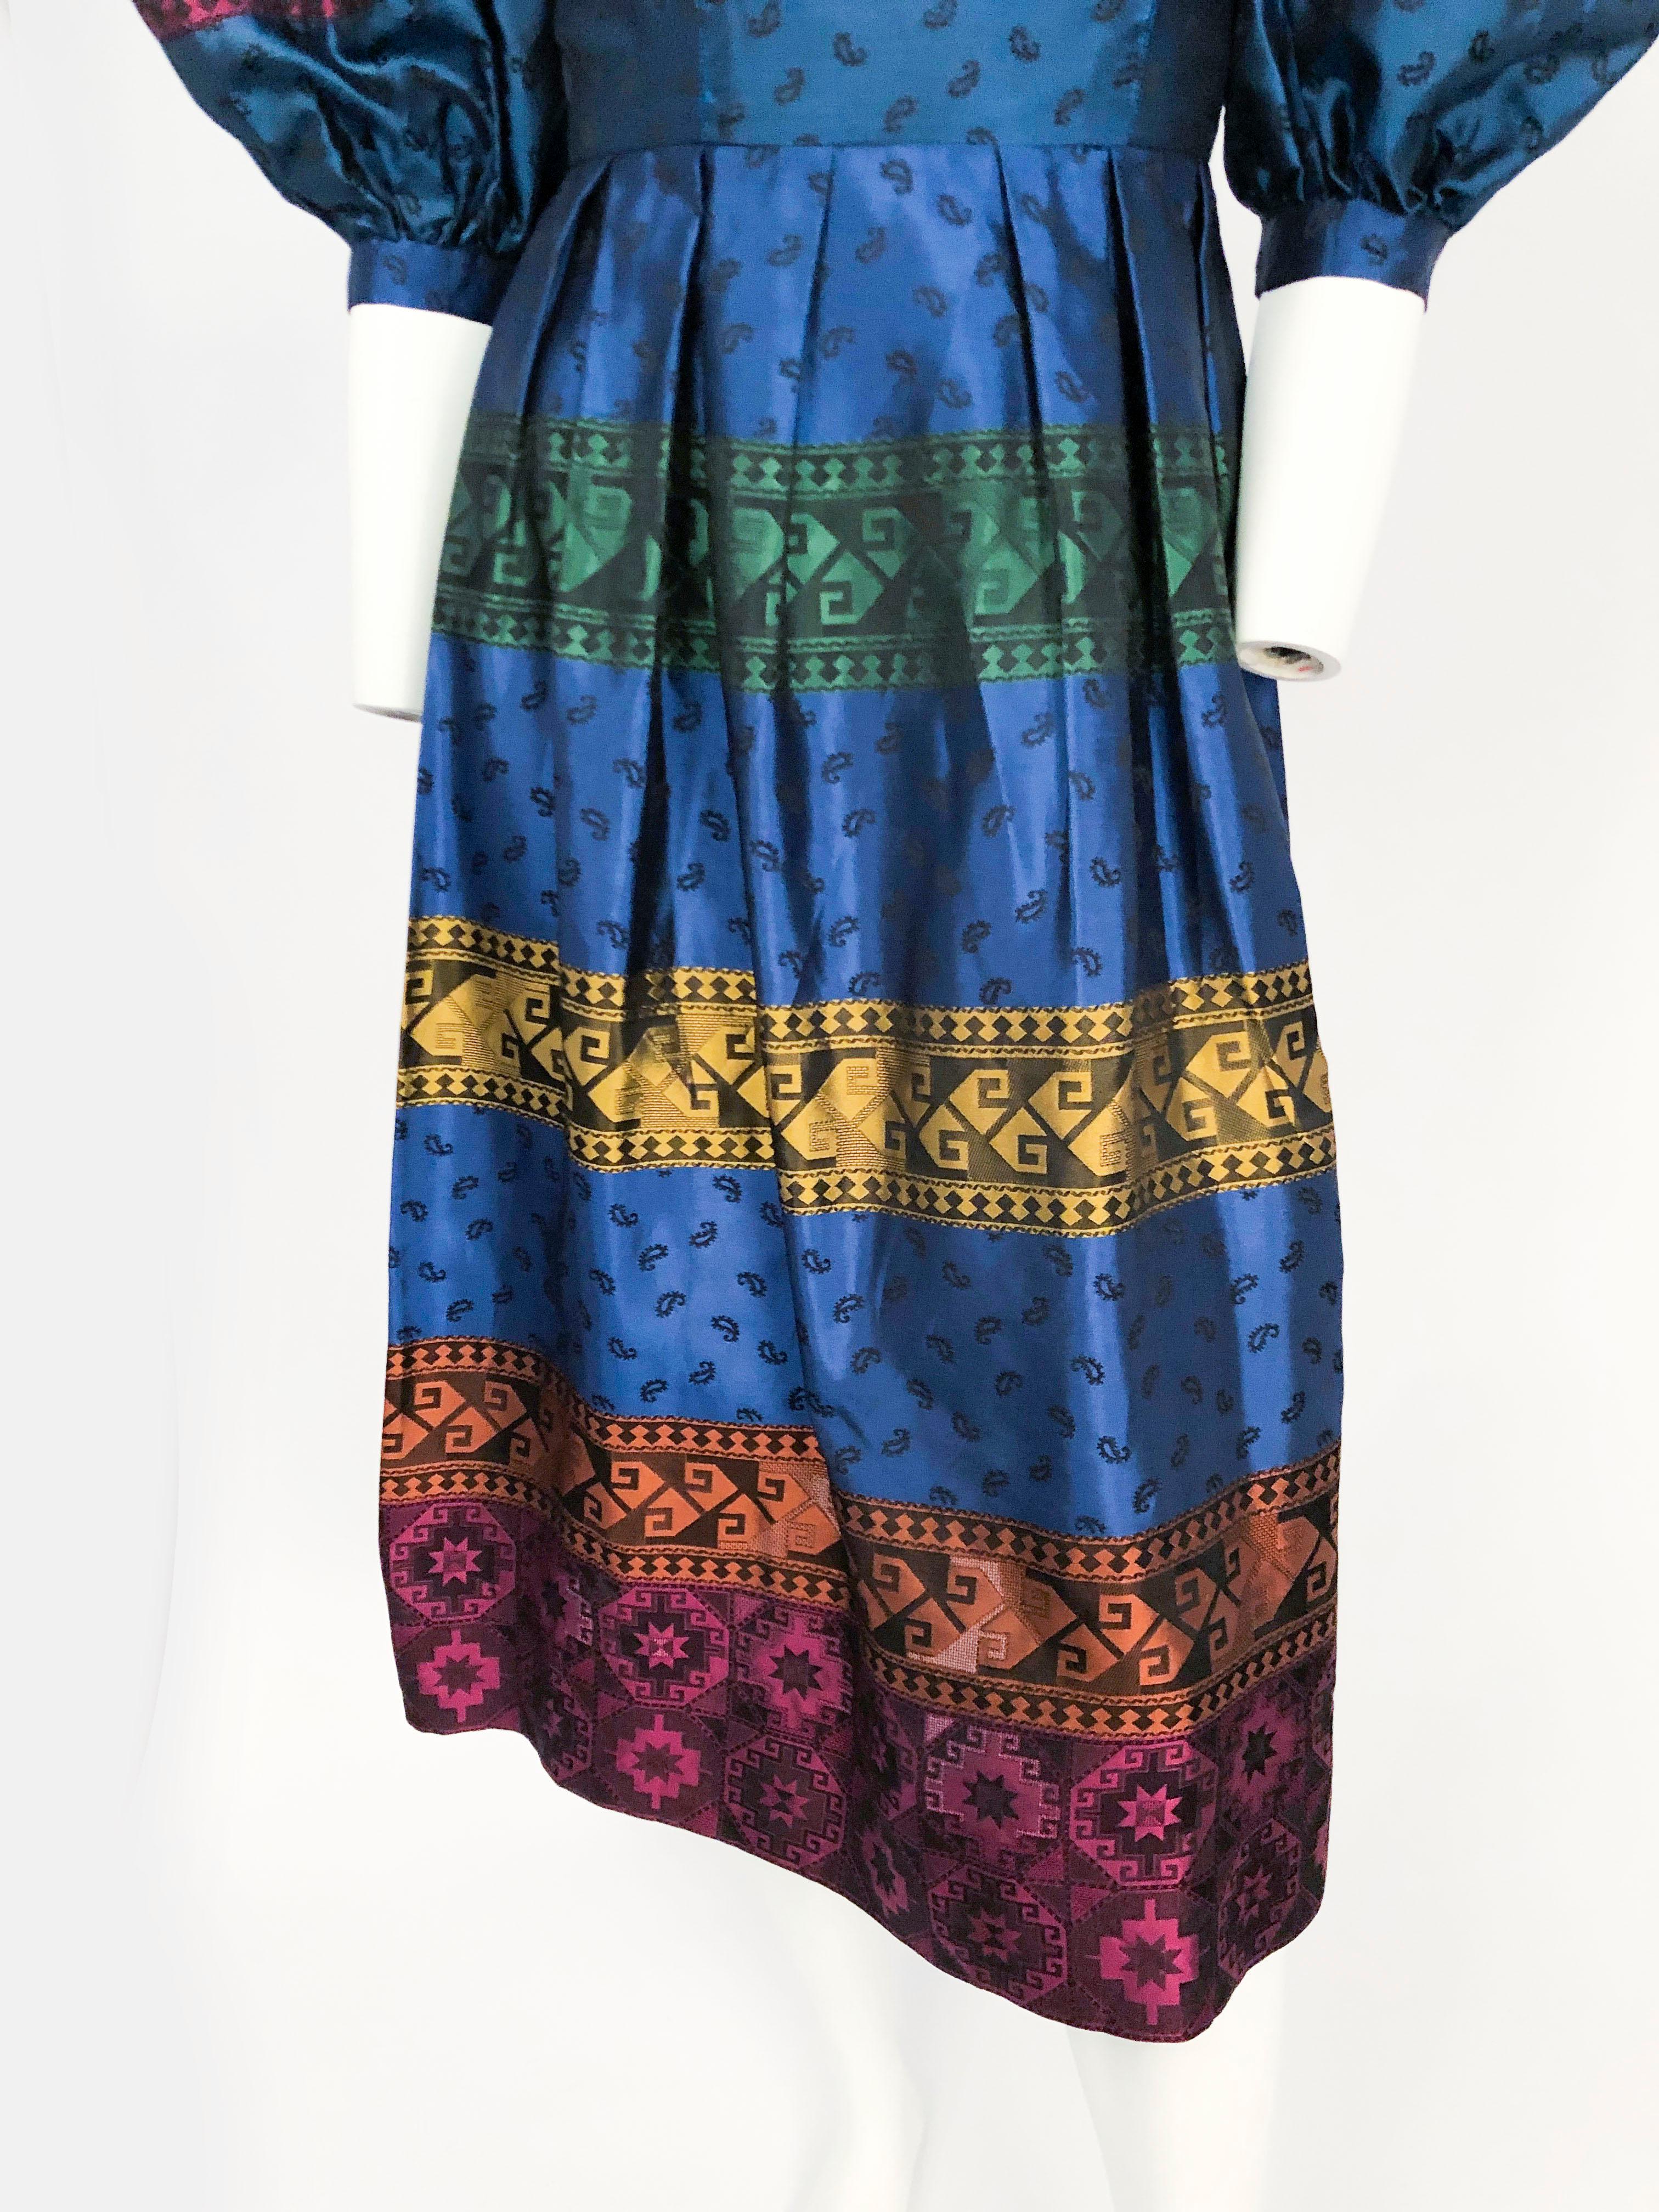 mehrfarbiges Kleid aus Seidenbrokat aus den 1980er Jahren mit übergroßen Puffärmeln, herzförmigem Ausschnitt, Bändern mit geometrischen Mustern und Pullwork. Die Ärmel sind ellbogenlang und mit einem 1-Zoll-Bündchen versehen.